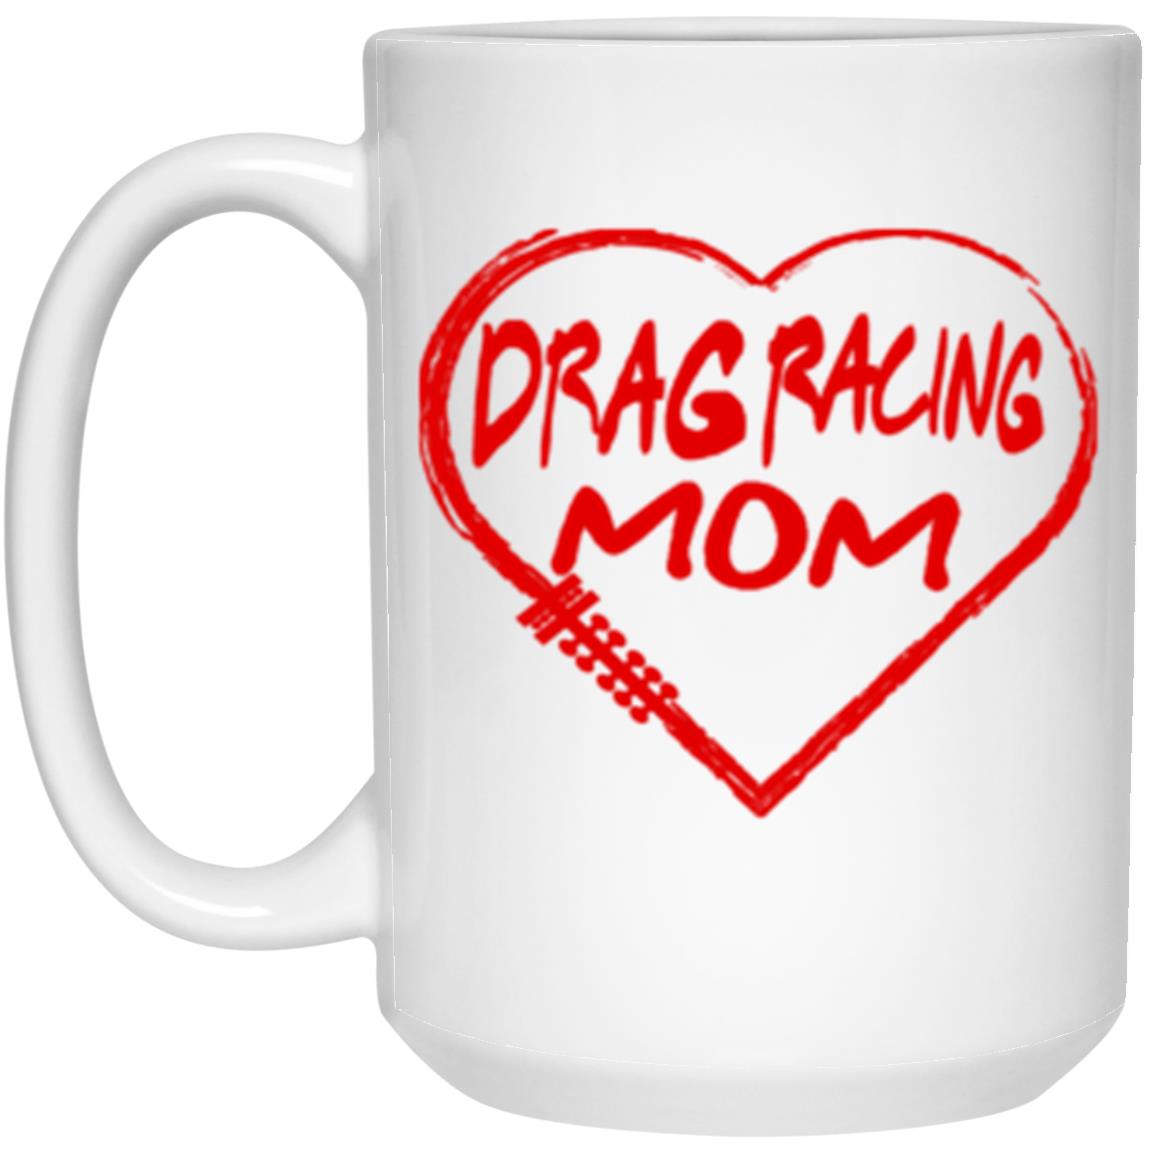 Drag Racing Mom Heart 15 oz. White Mug